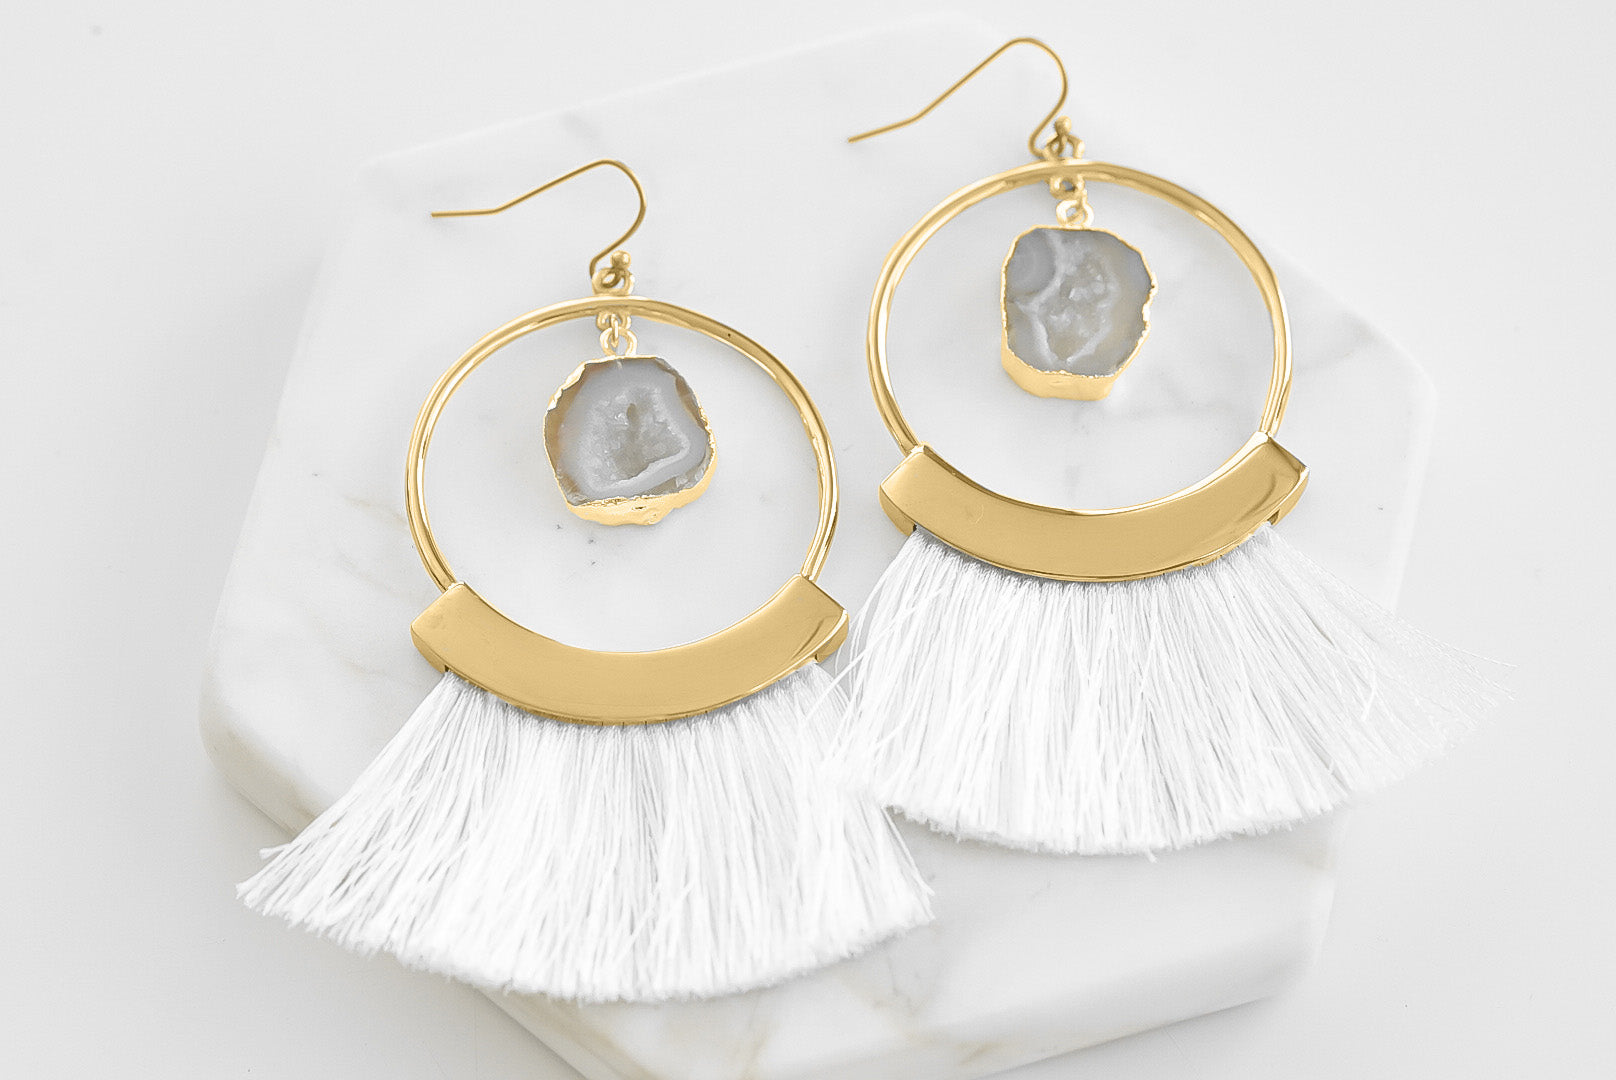 Colección Agate - Pendientes con flecos cenicientos joyería fina de diseño para hombres y mujeres